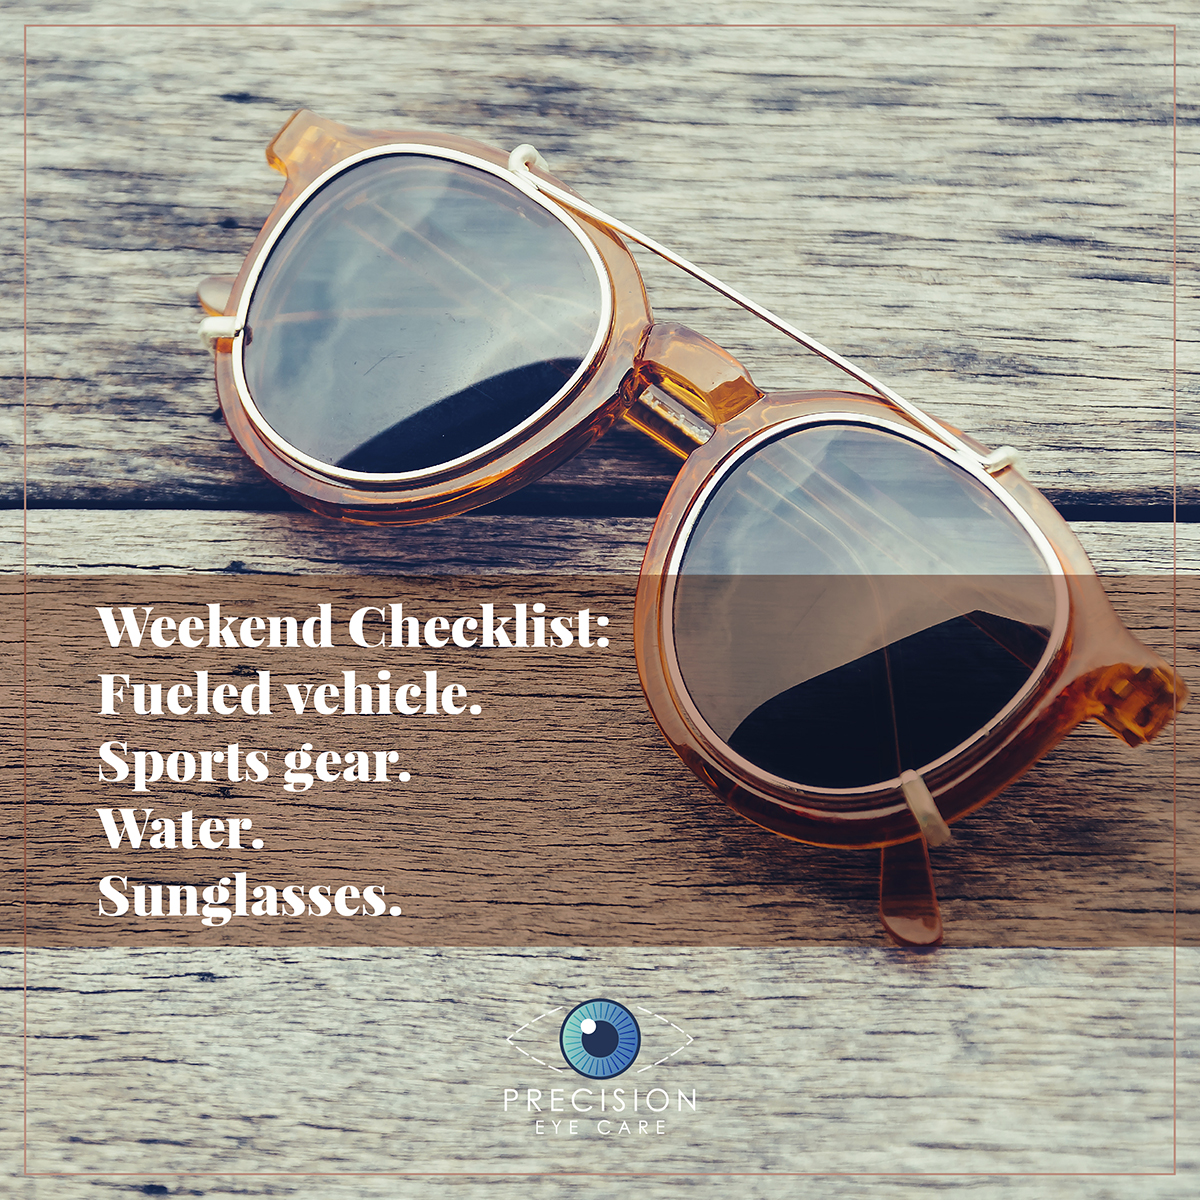 Weekend Checklist